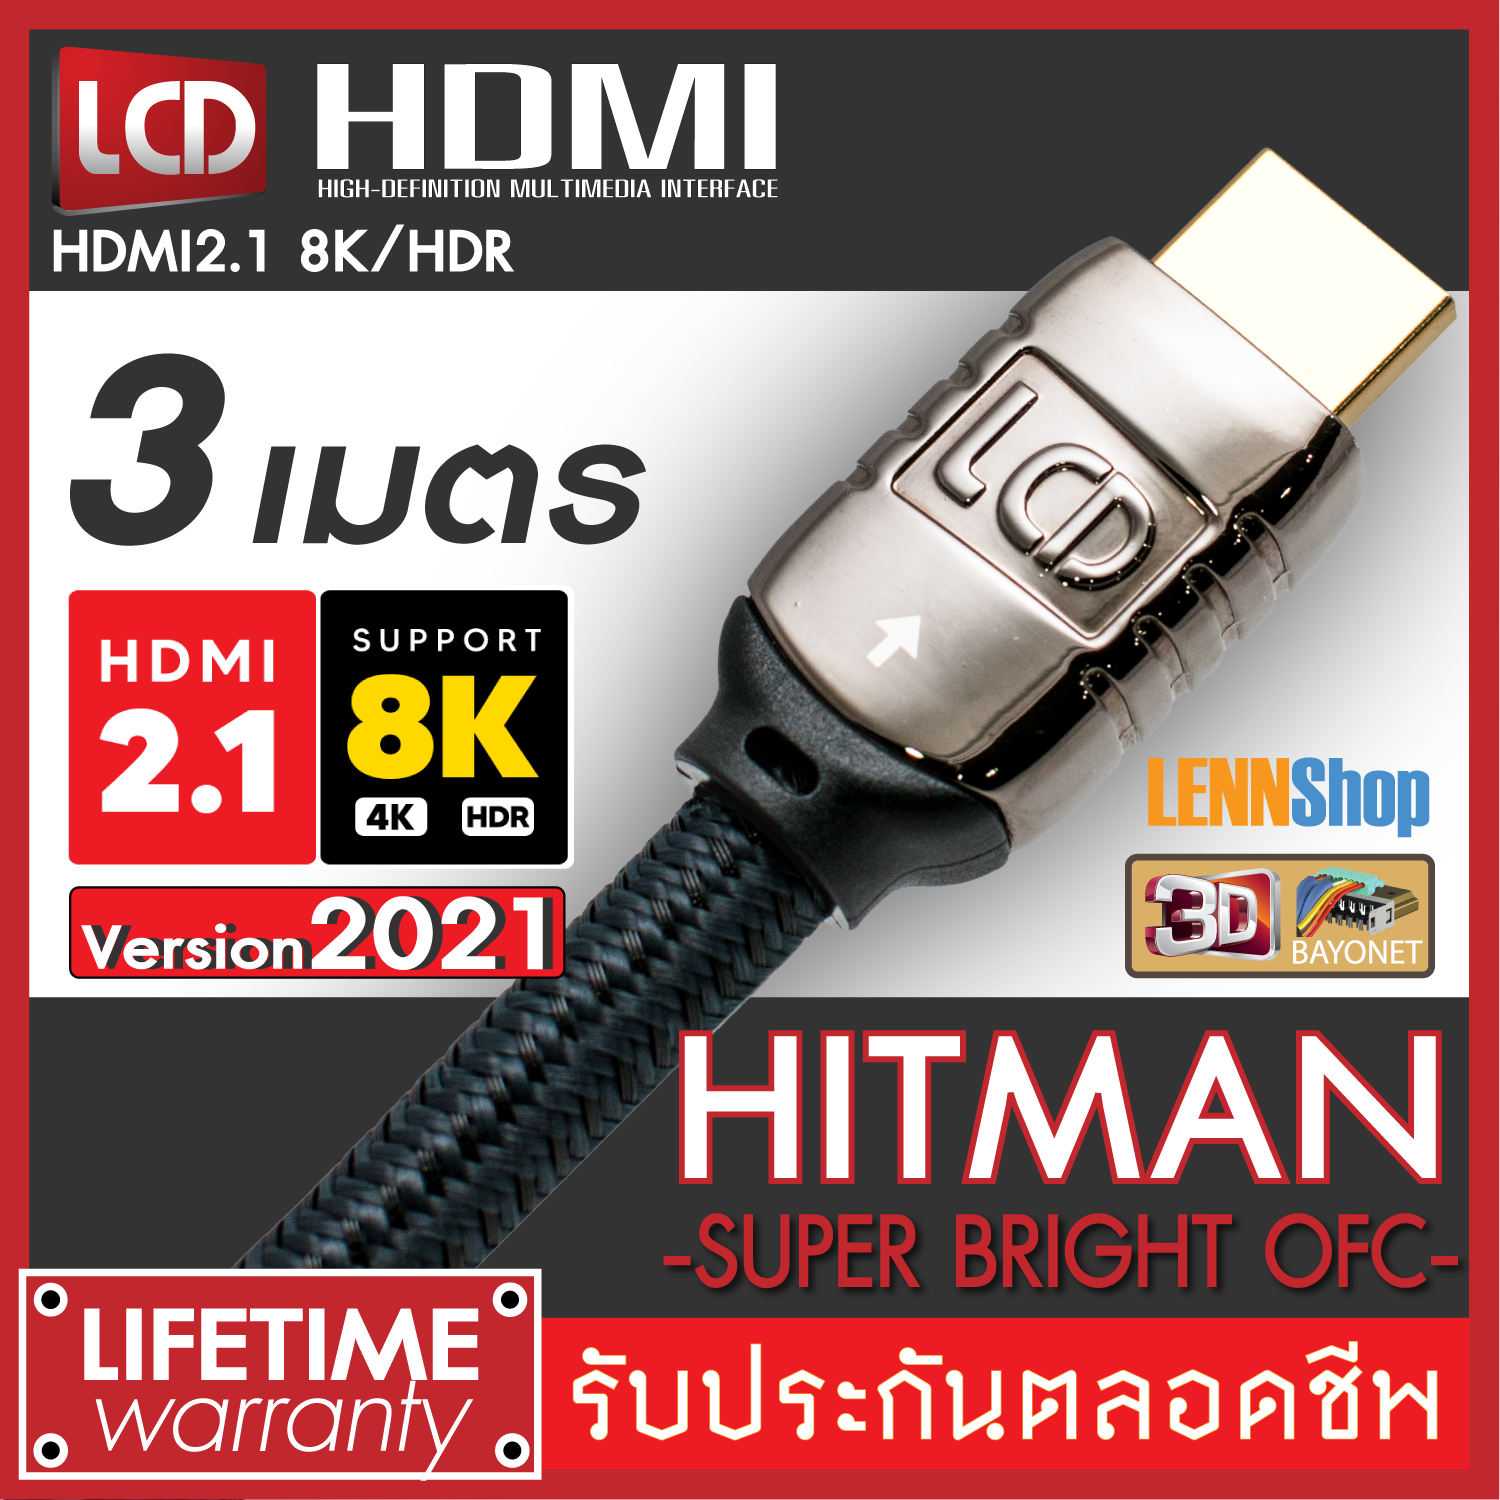 HITMAN 3M HDMI New Version 2021 HDMI OFC ของแท้ 8K/HDR HDMI V2.1 รองรับระบบภาพ 8K/HDR , 3D, ARC, Dolby Vision, H10 ระบบเสียง Dolby Atmos DtsX / ยาว 3 เมตร  / LENNSHOP